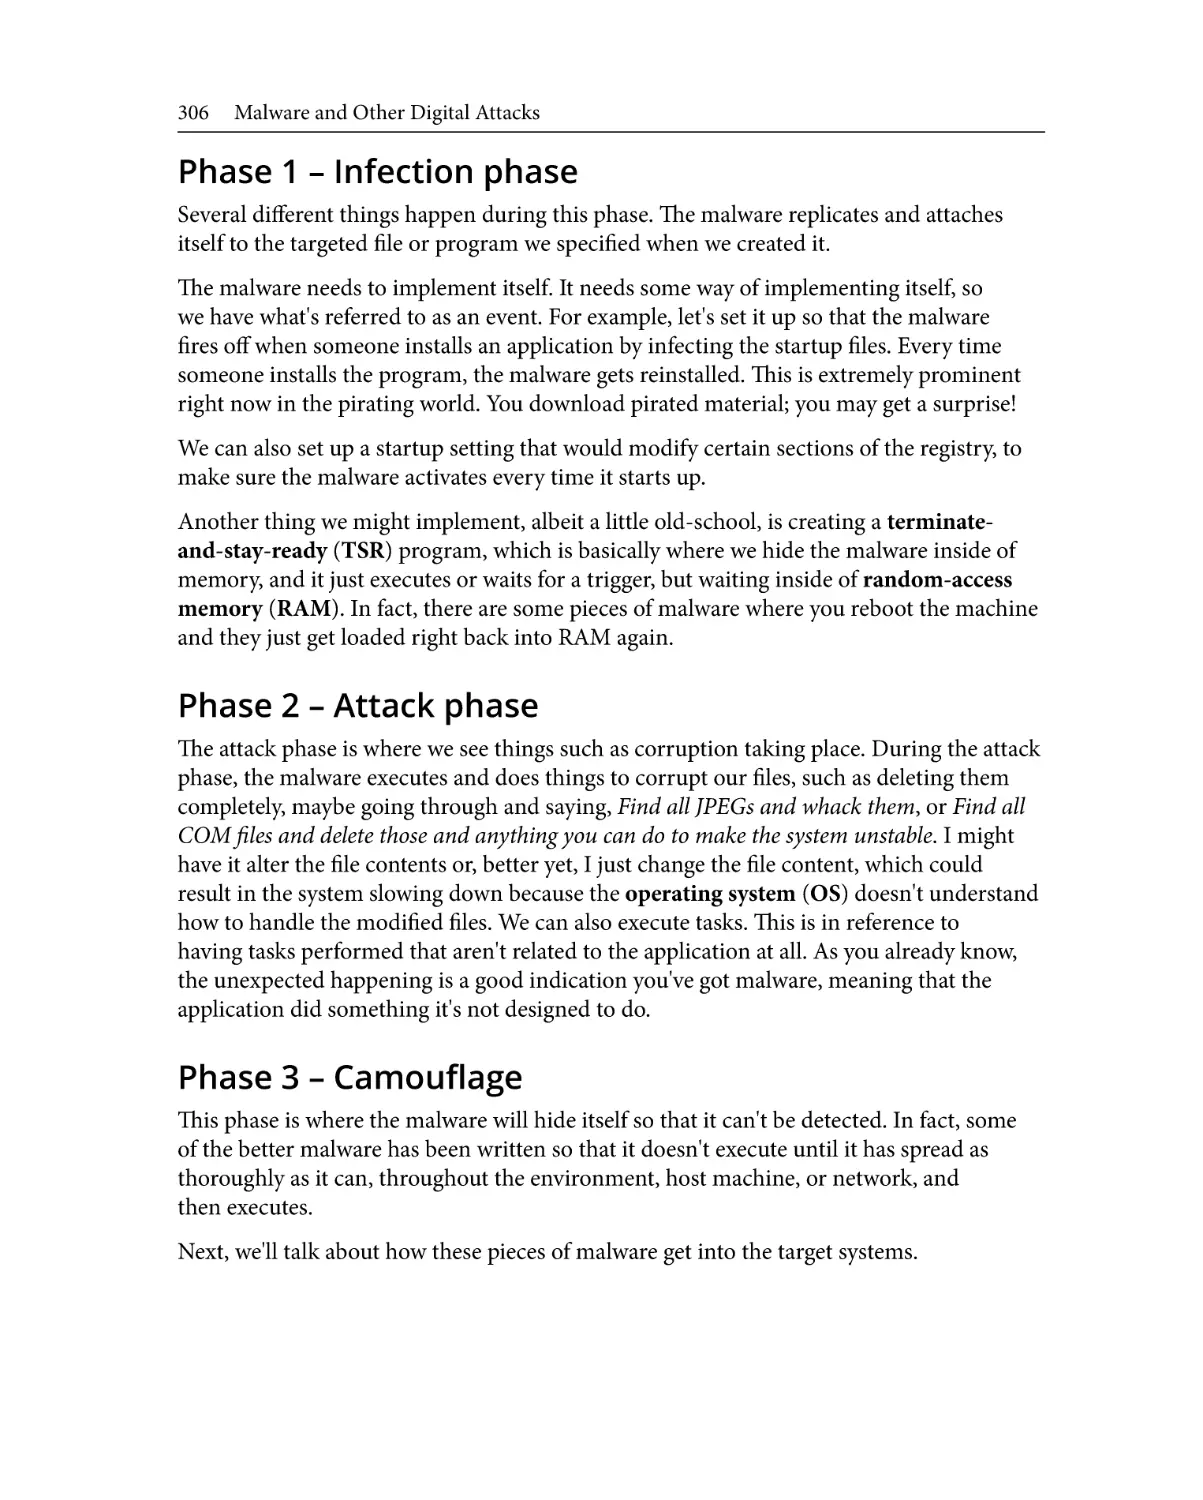 Phase 1 – Infection phase
Phase 2 – Attack phase
Phase 3 – Camouflage